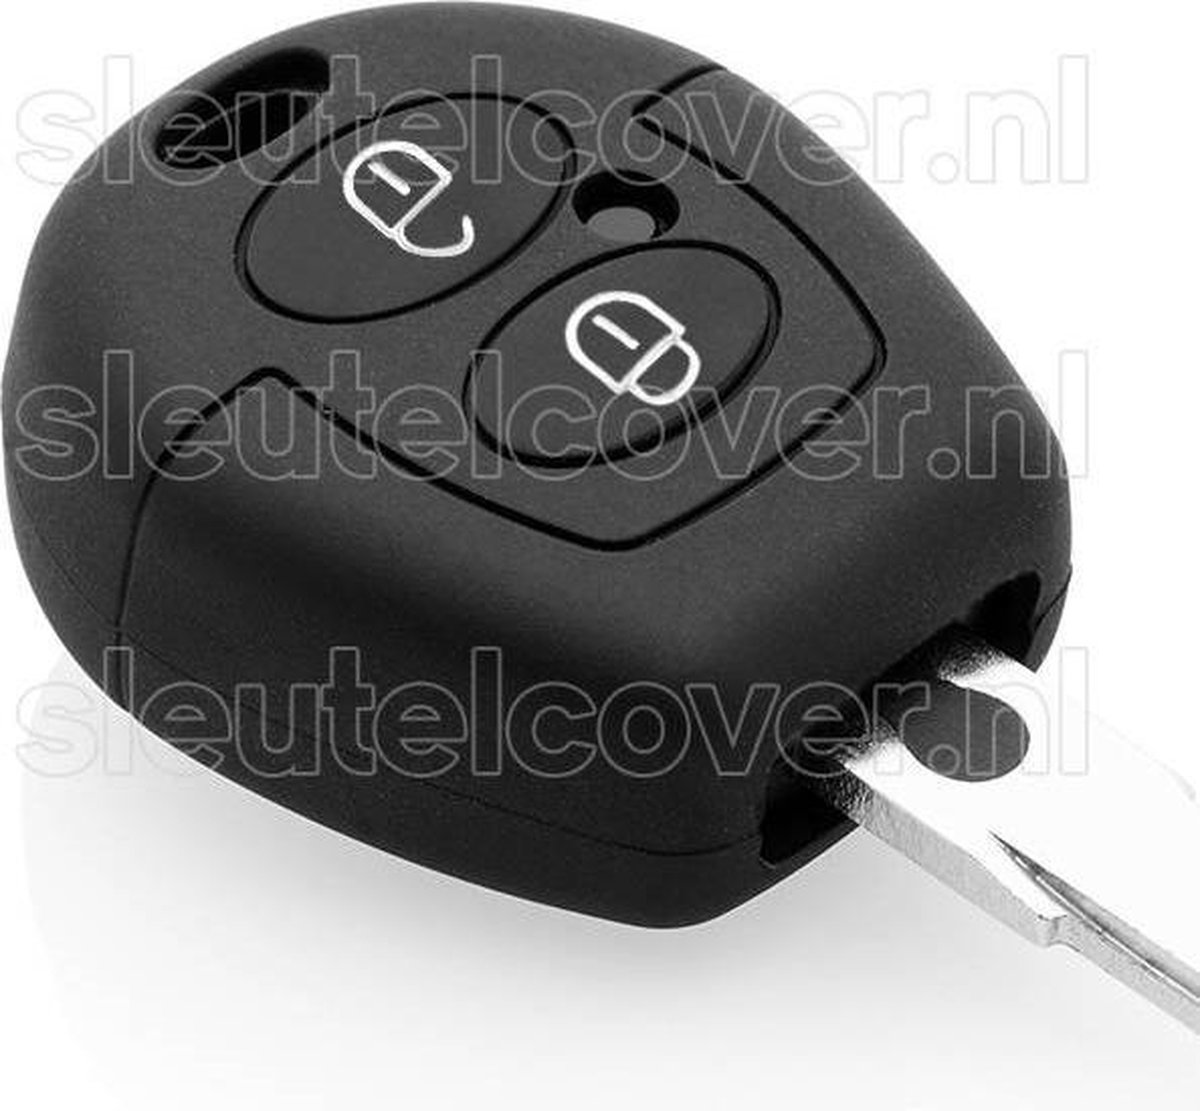 Autosleutel Hoesje geschikt voor Skoda - SleutelCover - Silicone Autosleutel Cover - Sleutelhoesje Zwart